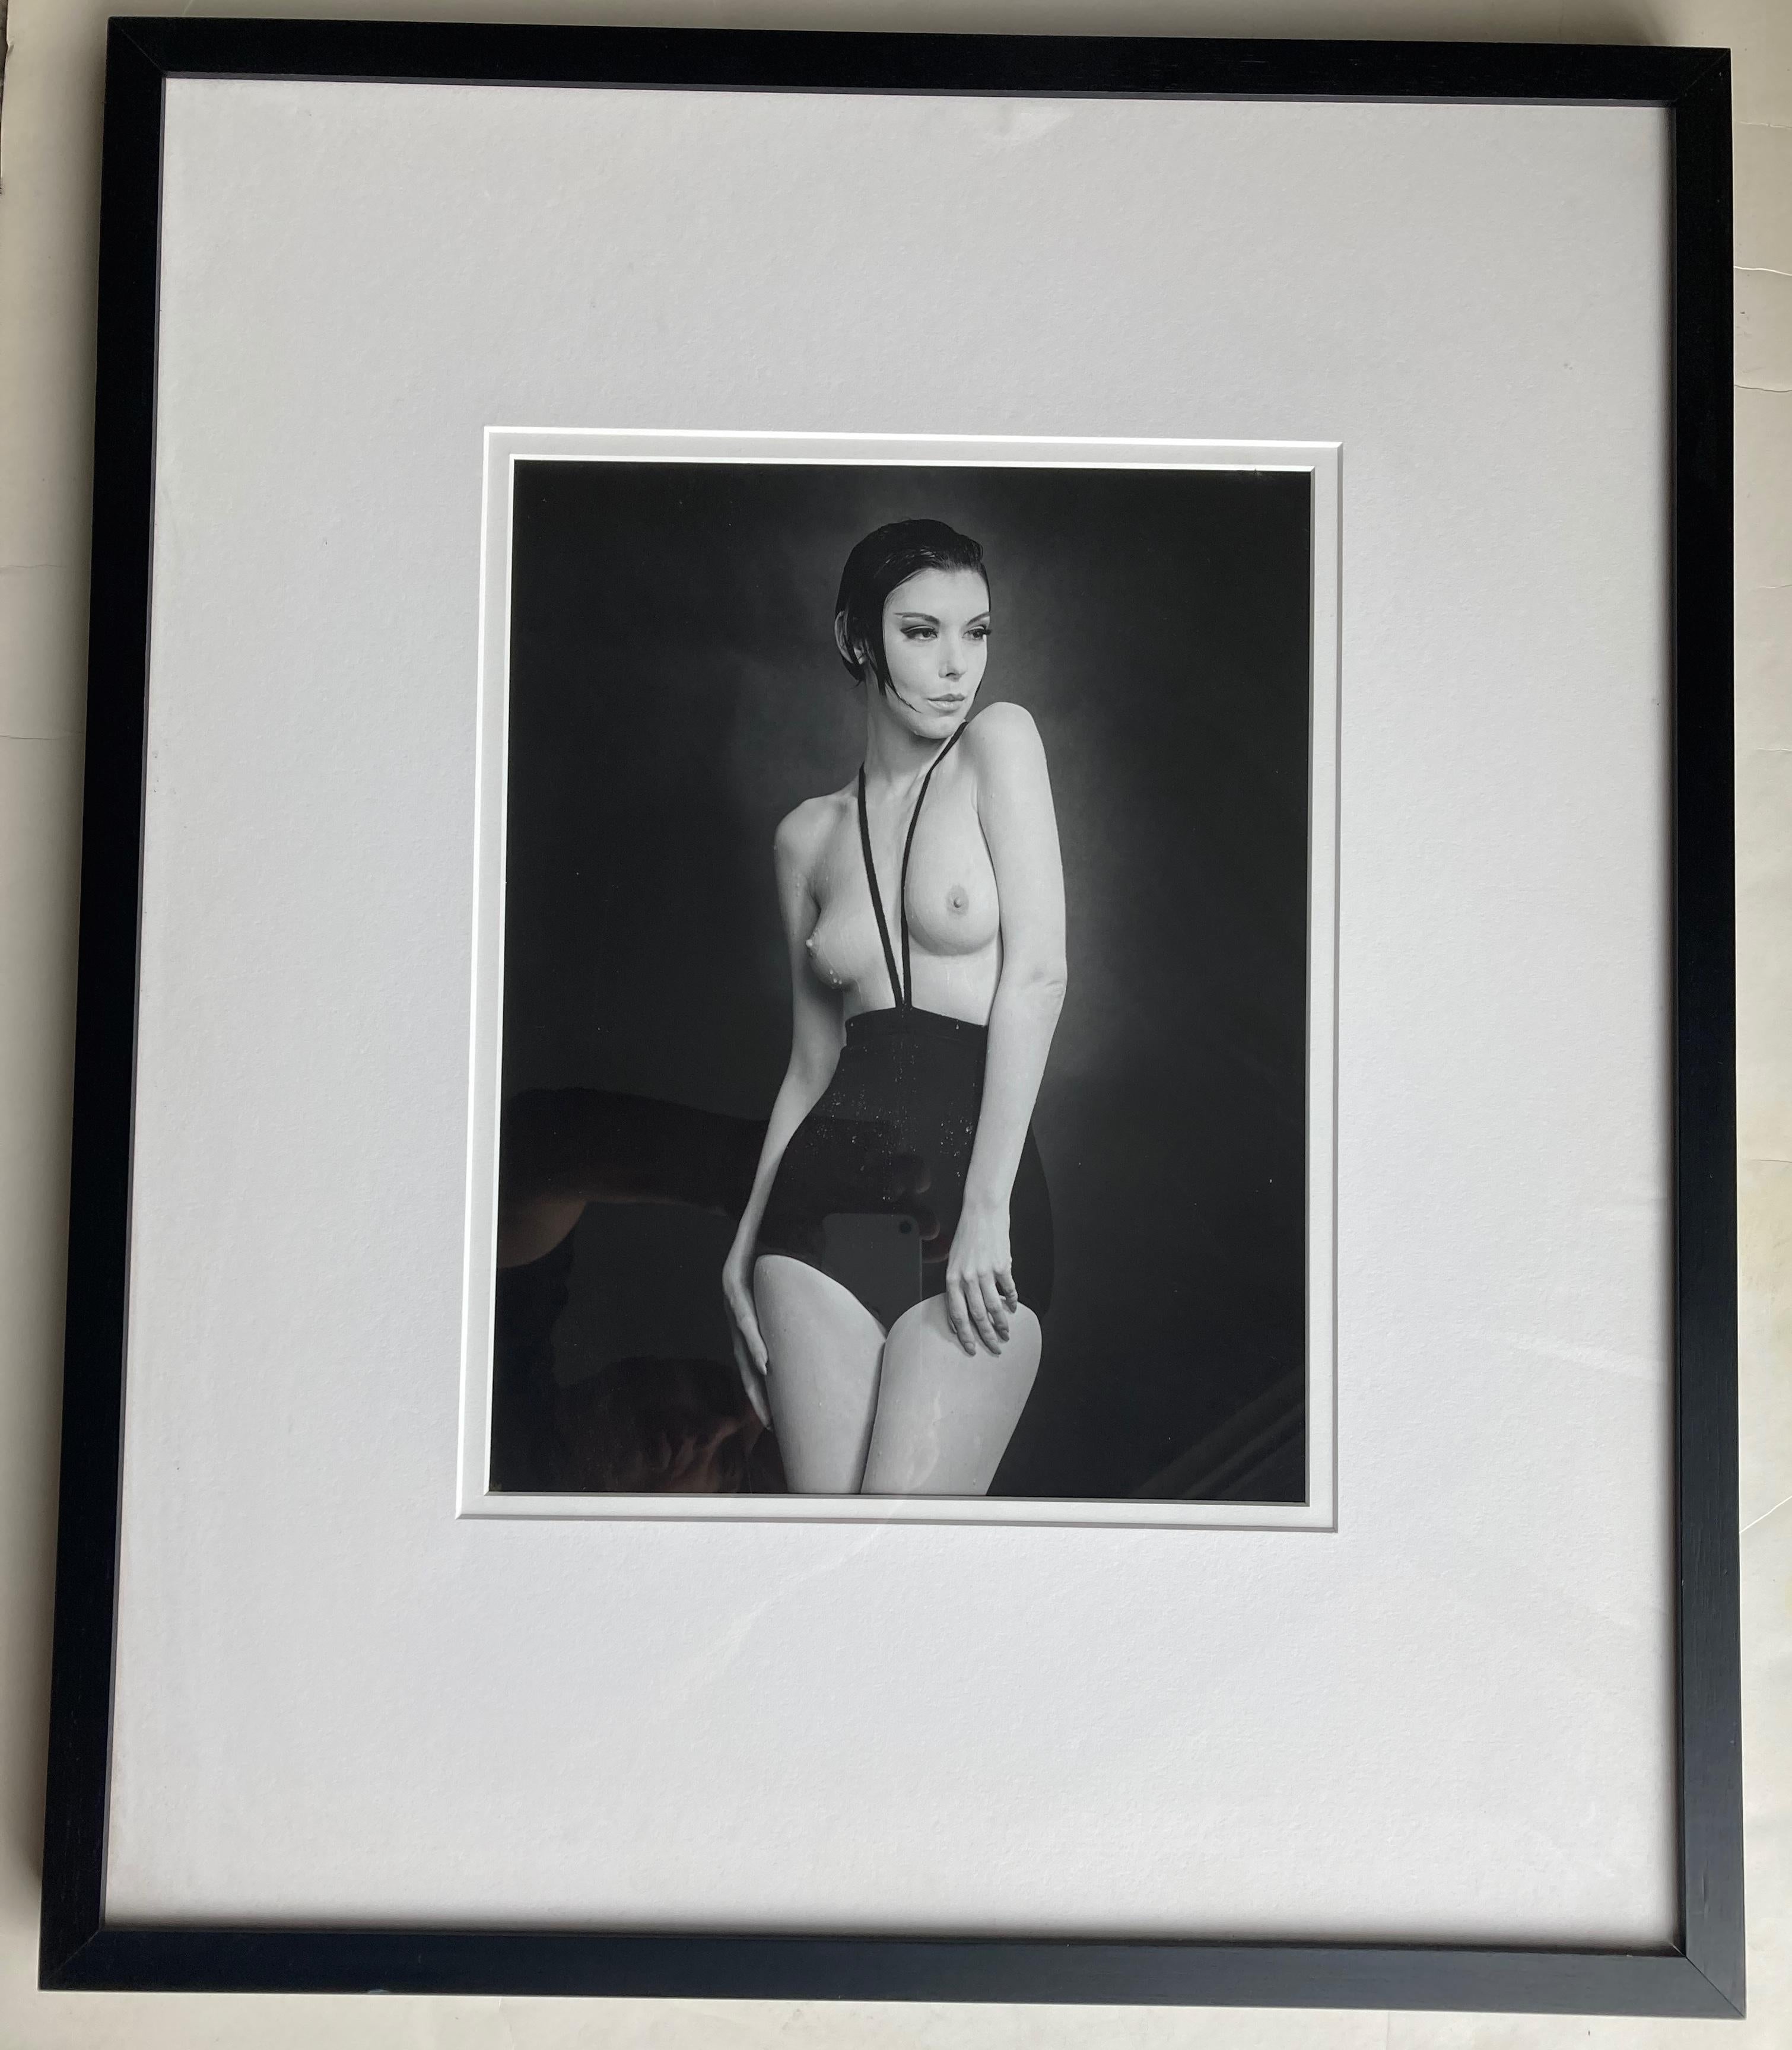 Nous avons une très belle et importante photo de l'artiste bien connu William Claxton de Peggy Moffit dans le maillot de bain sans haut de Rudi Gernreich